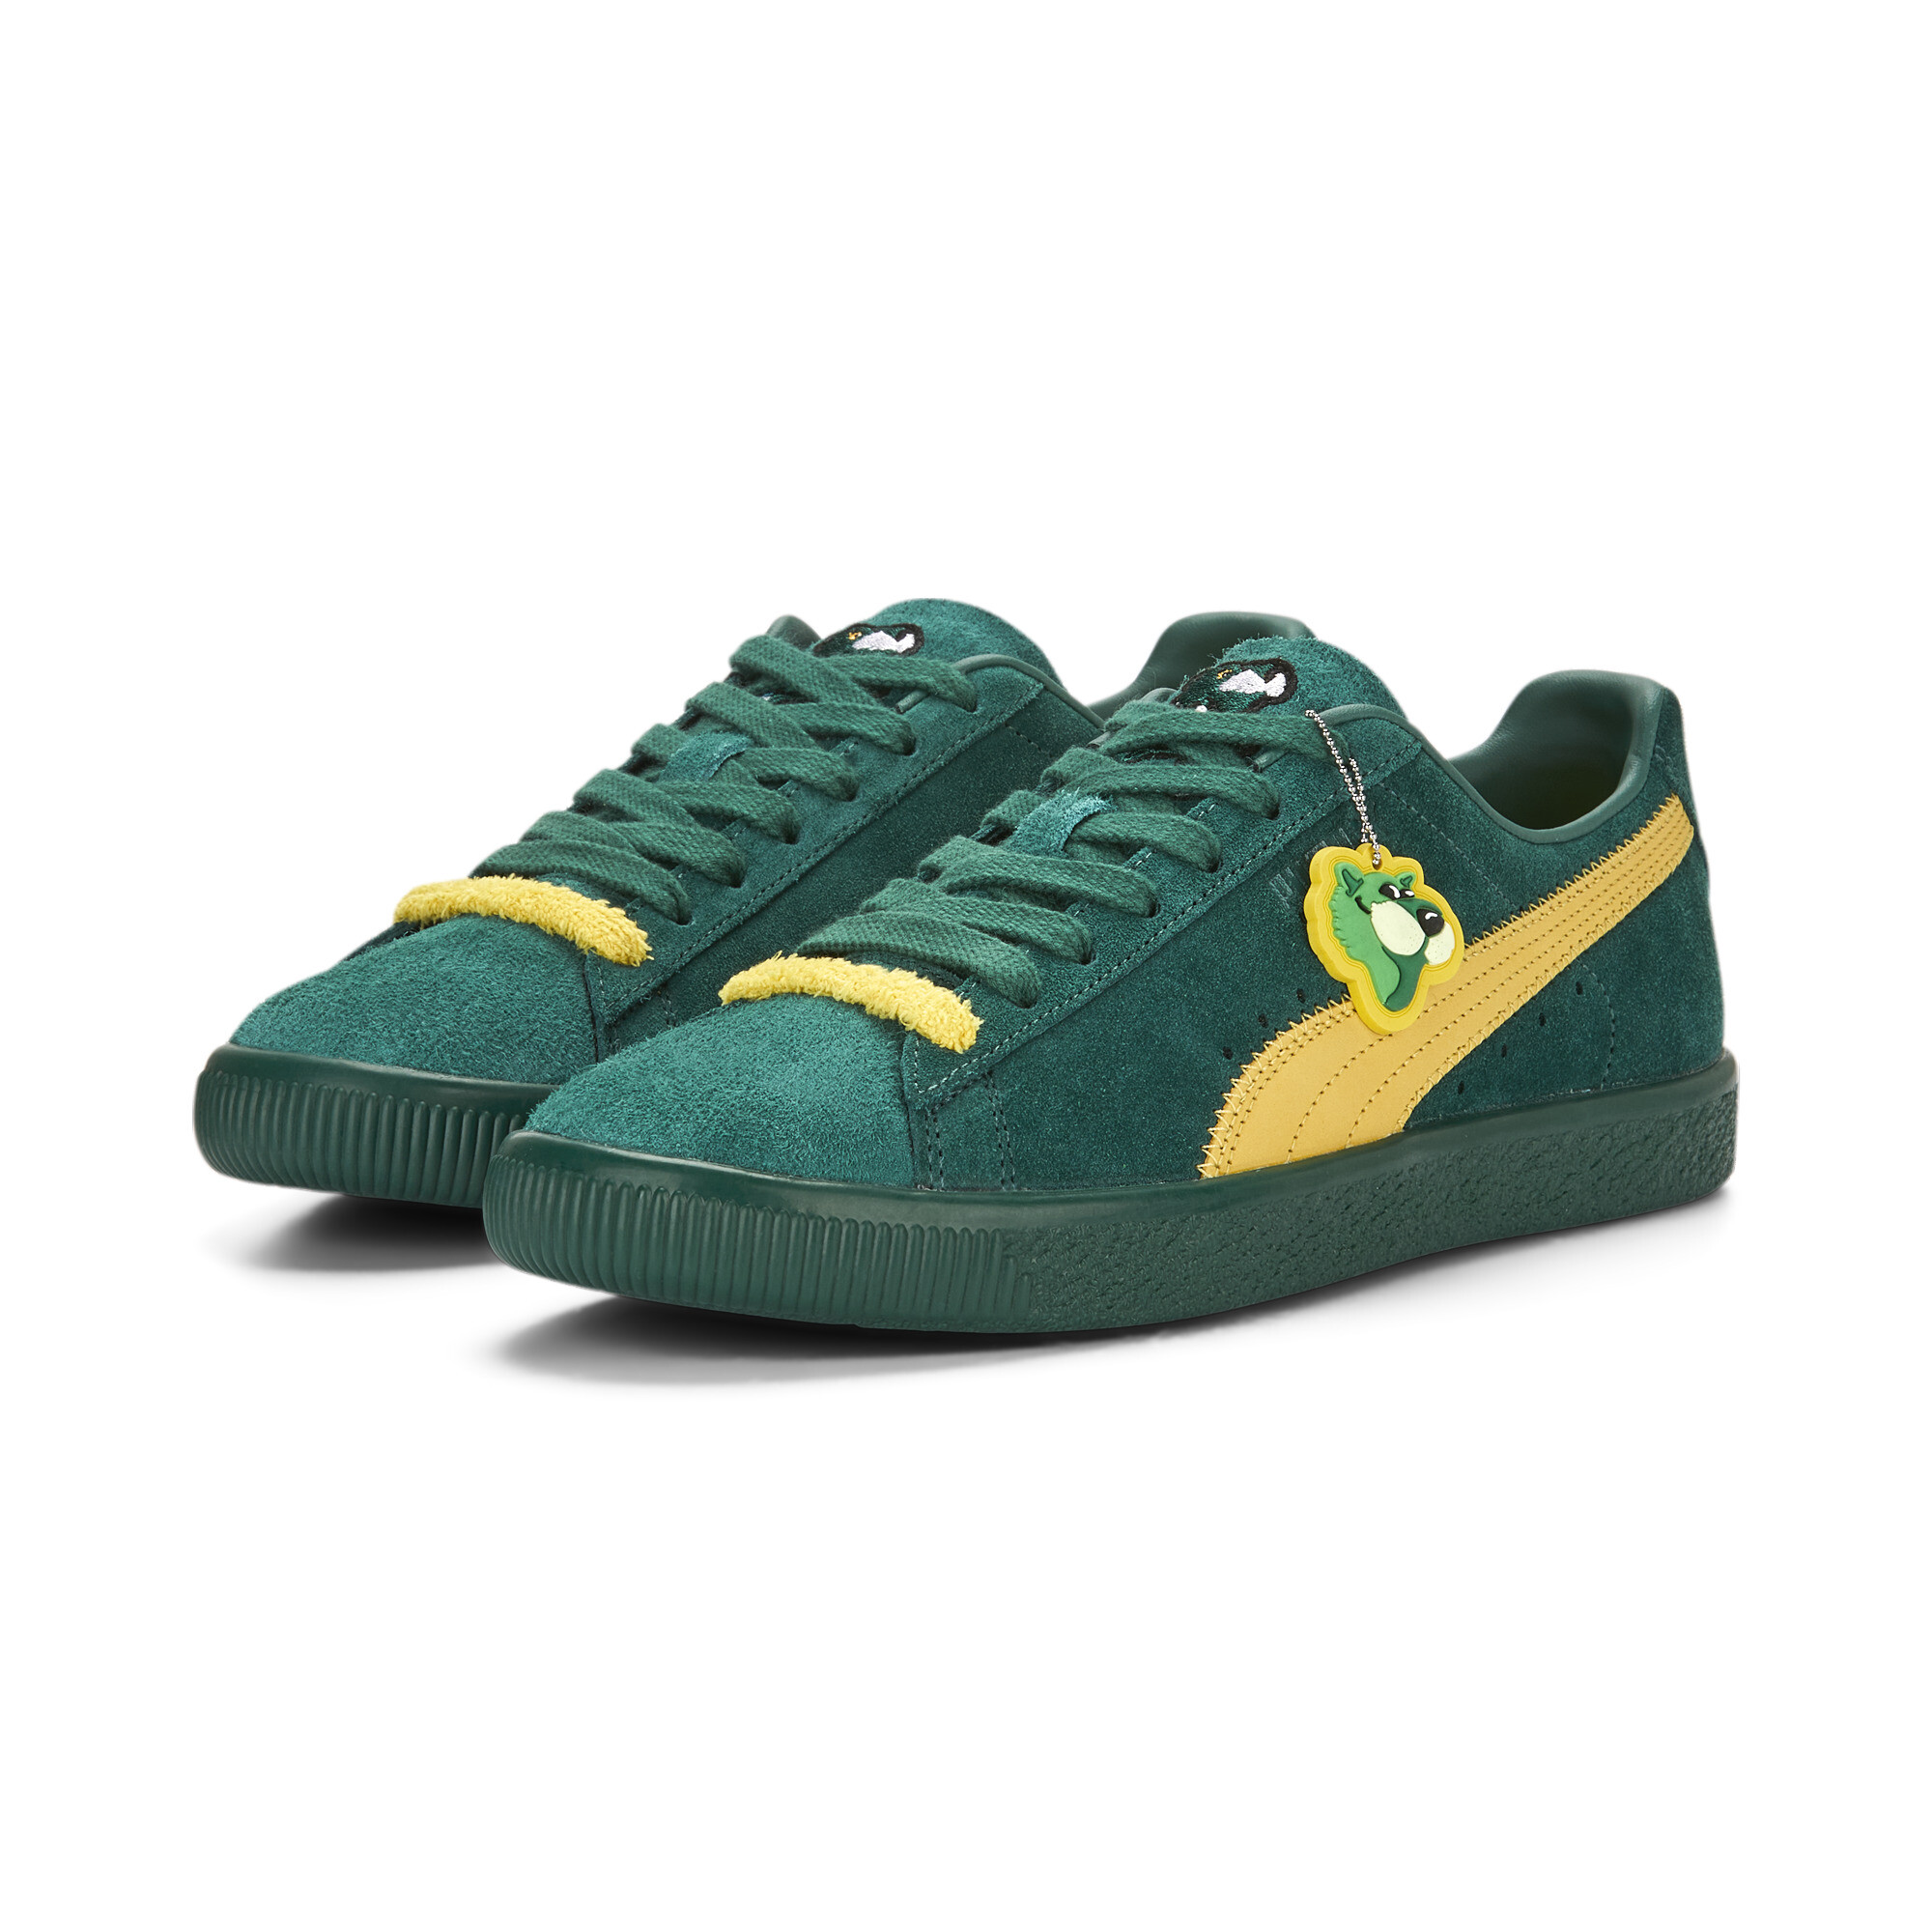 Men's Clyde Super PUMA Sneakers In Green, Size EU 45